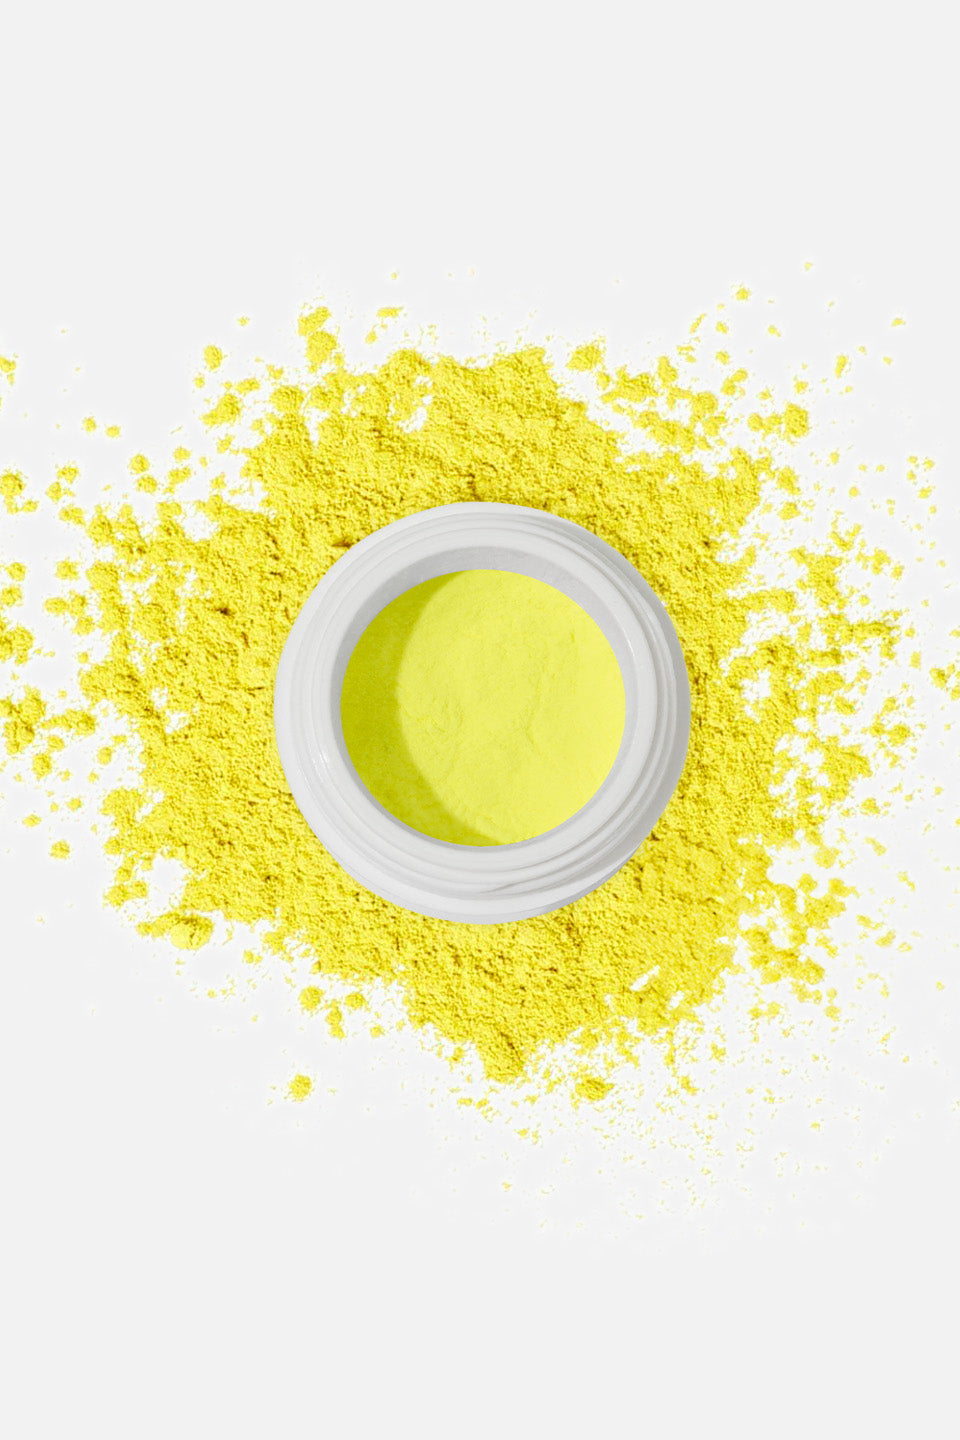 Polvere acrilica giallo neon 5 g